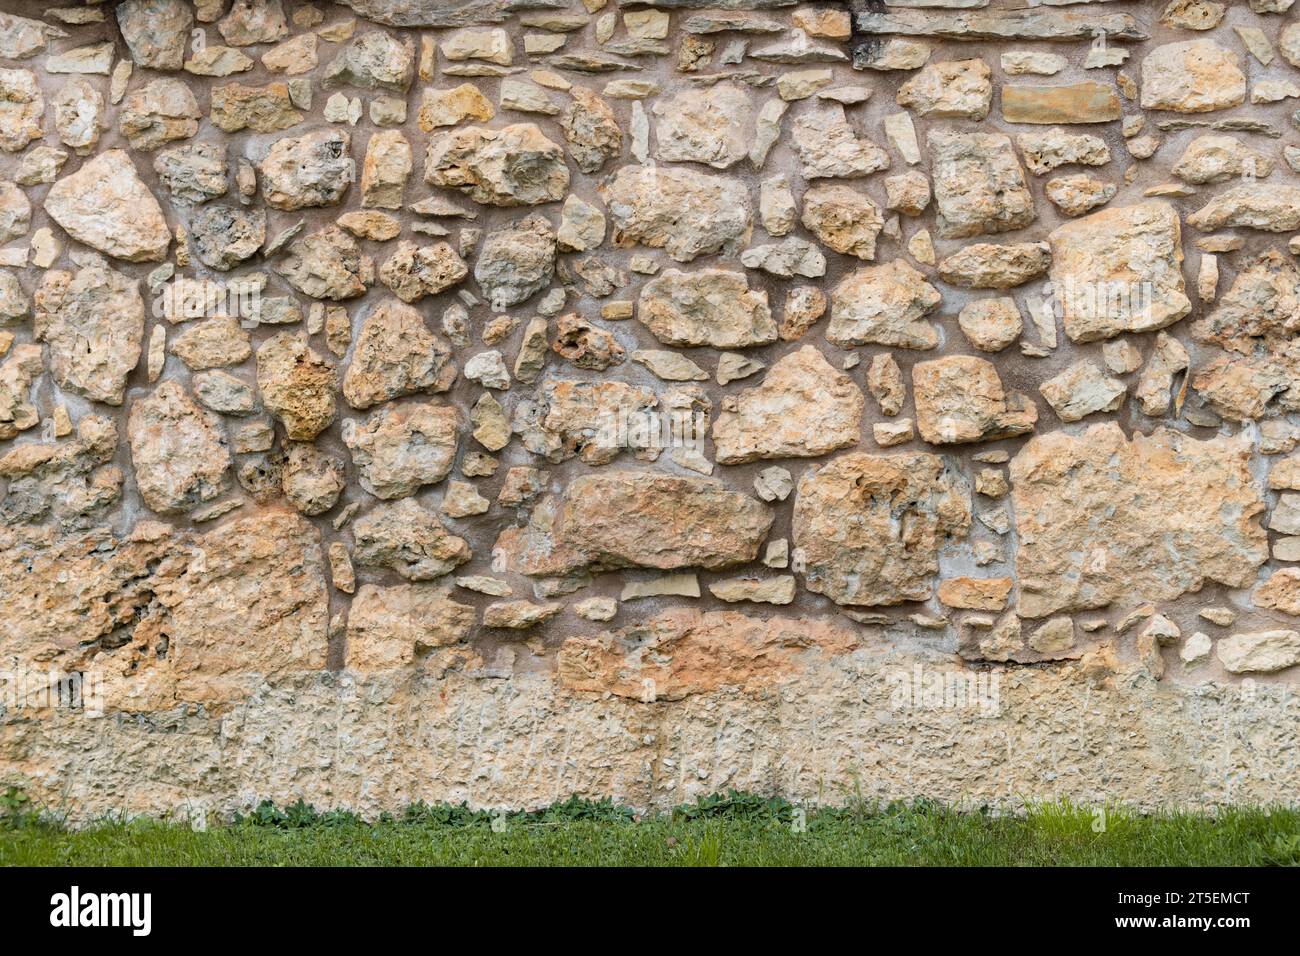 Vecchia trama di sfondo della parete in pietra. L'esterno dell'edificio e' fatto di rocce di dimensioni diverse e cemento nel mezzo. E' stato usato materiale naturale. Foto Stock